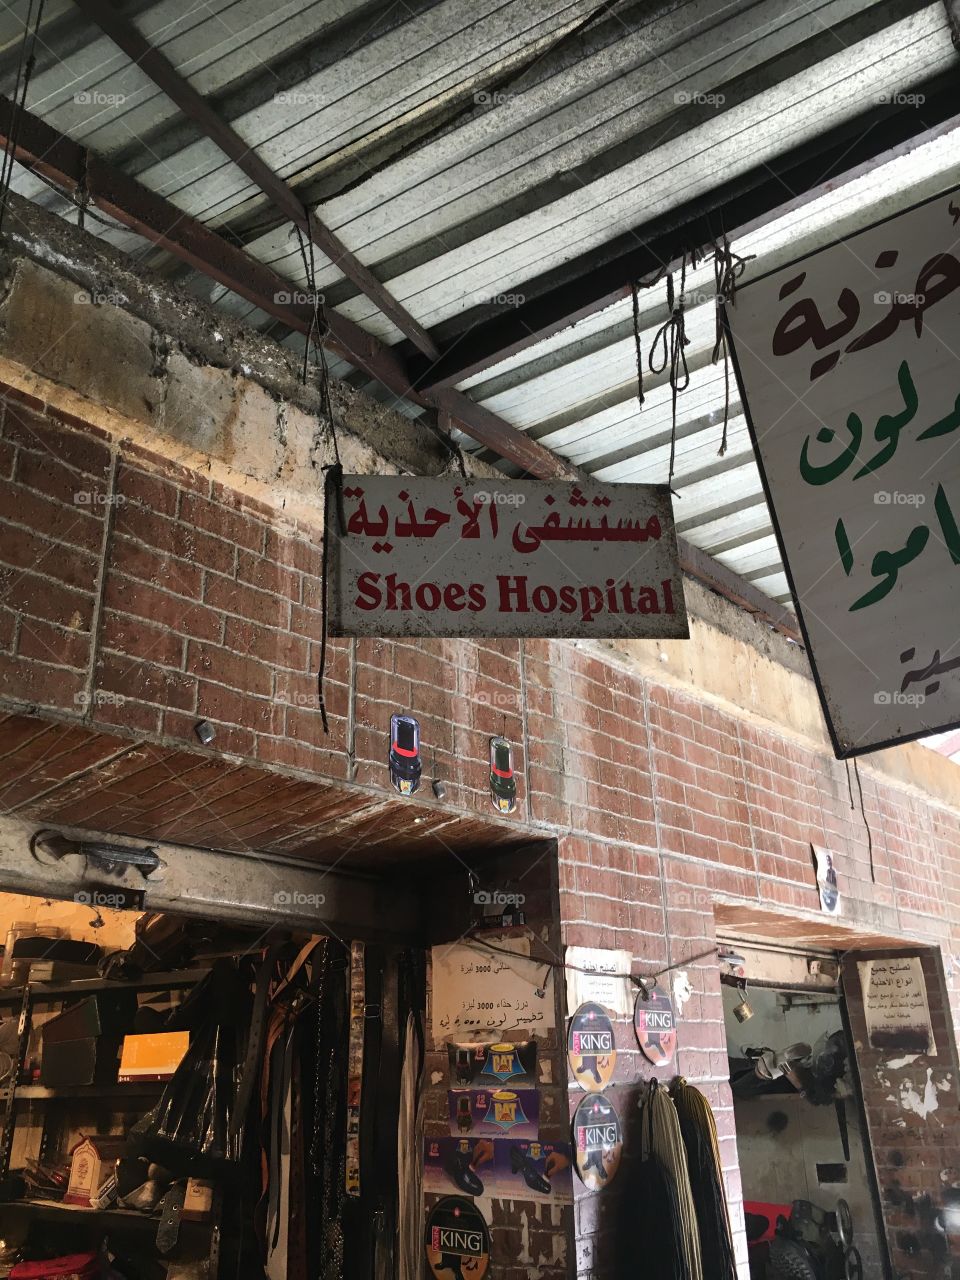 Shoes Hospital